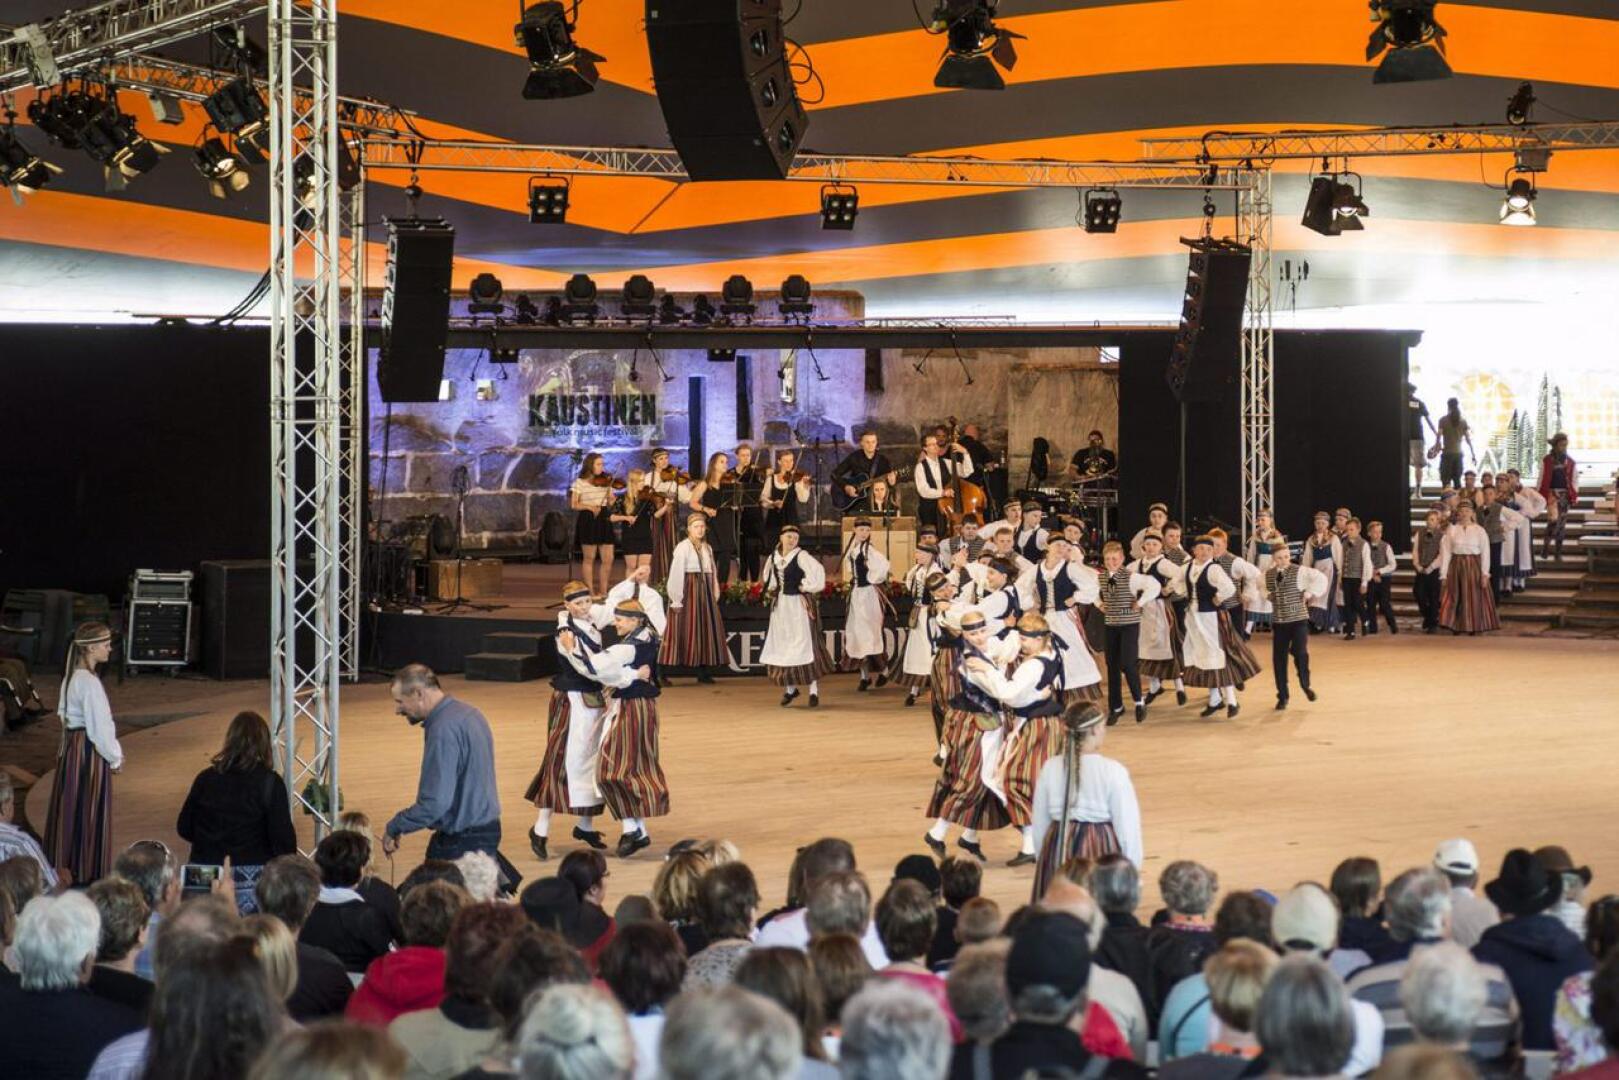 Keski-Pohjanmaan kesä tarjoaa kaikkea konserteista raveihin ja viinijuhlista torimyyjäisiin. Kuvassa Kaustisen kansanmusiikkifestivaalit.